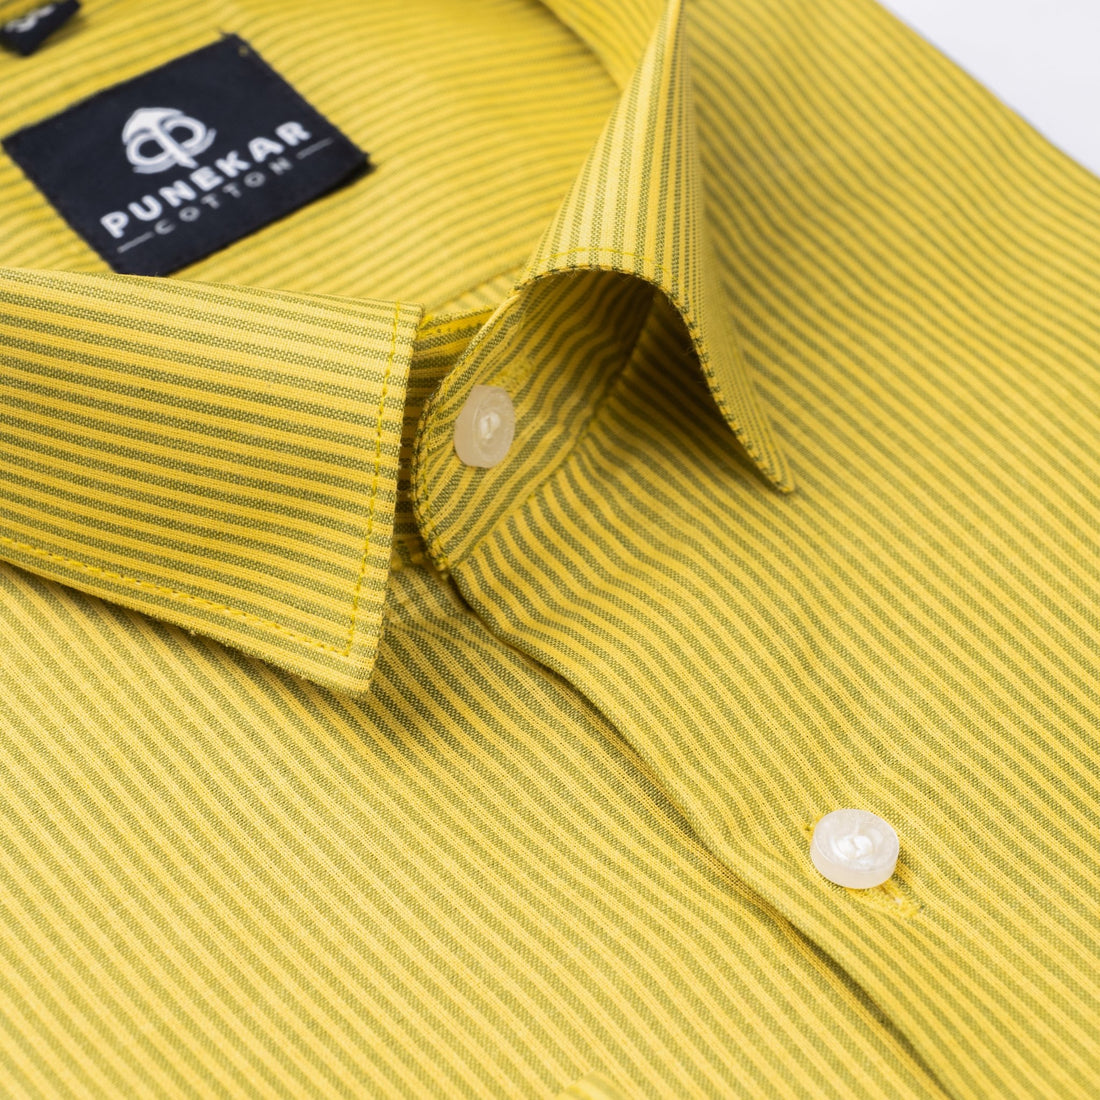 Yellow Color Lining Paper Cotton Shirts For Men - Punekar Cotton